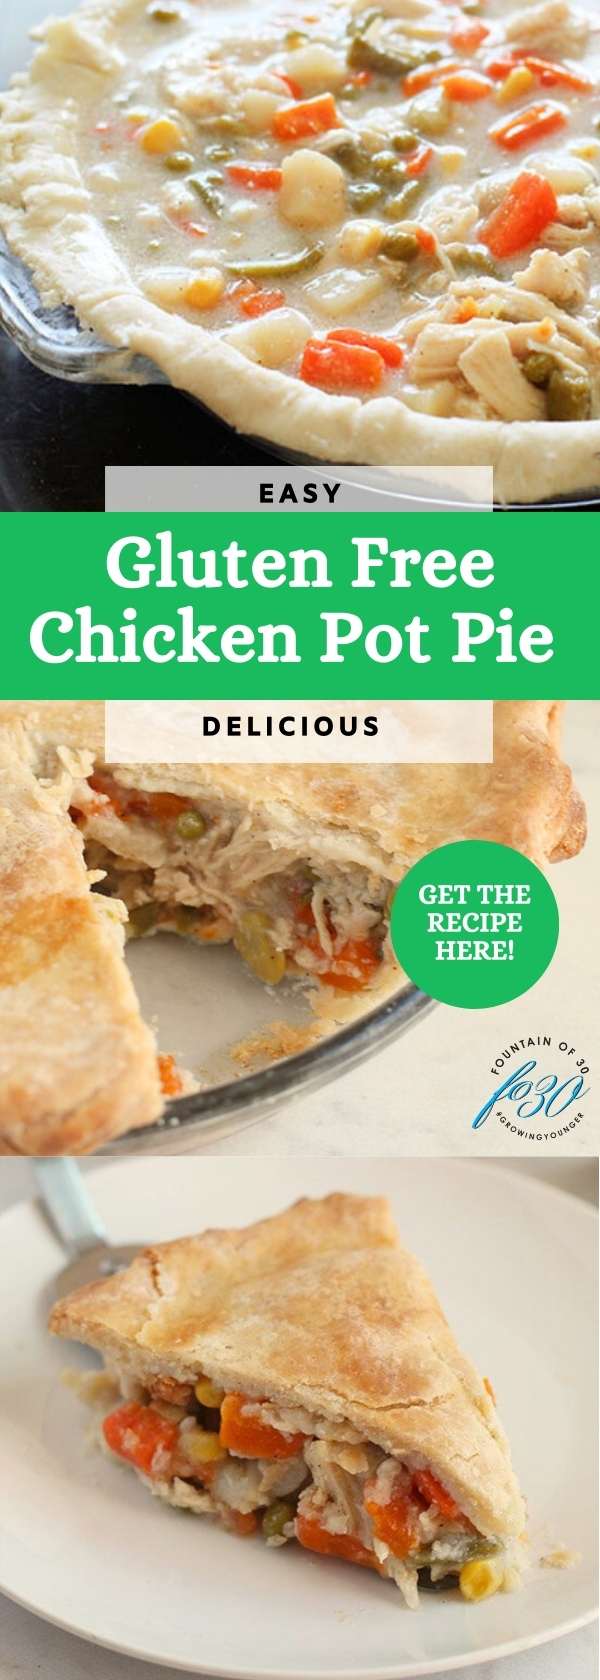 easy gluten free chicken pot pie recipe fountainof30